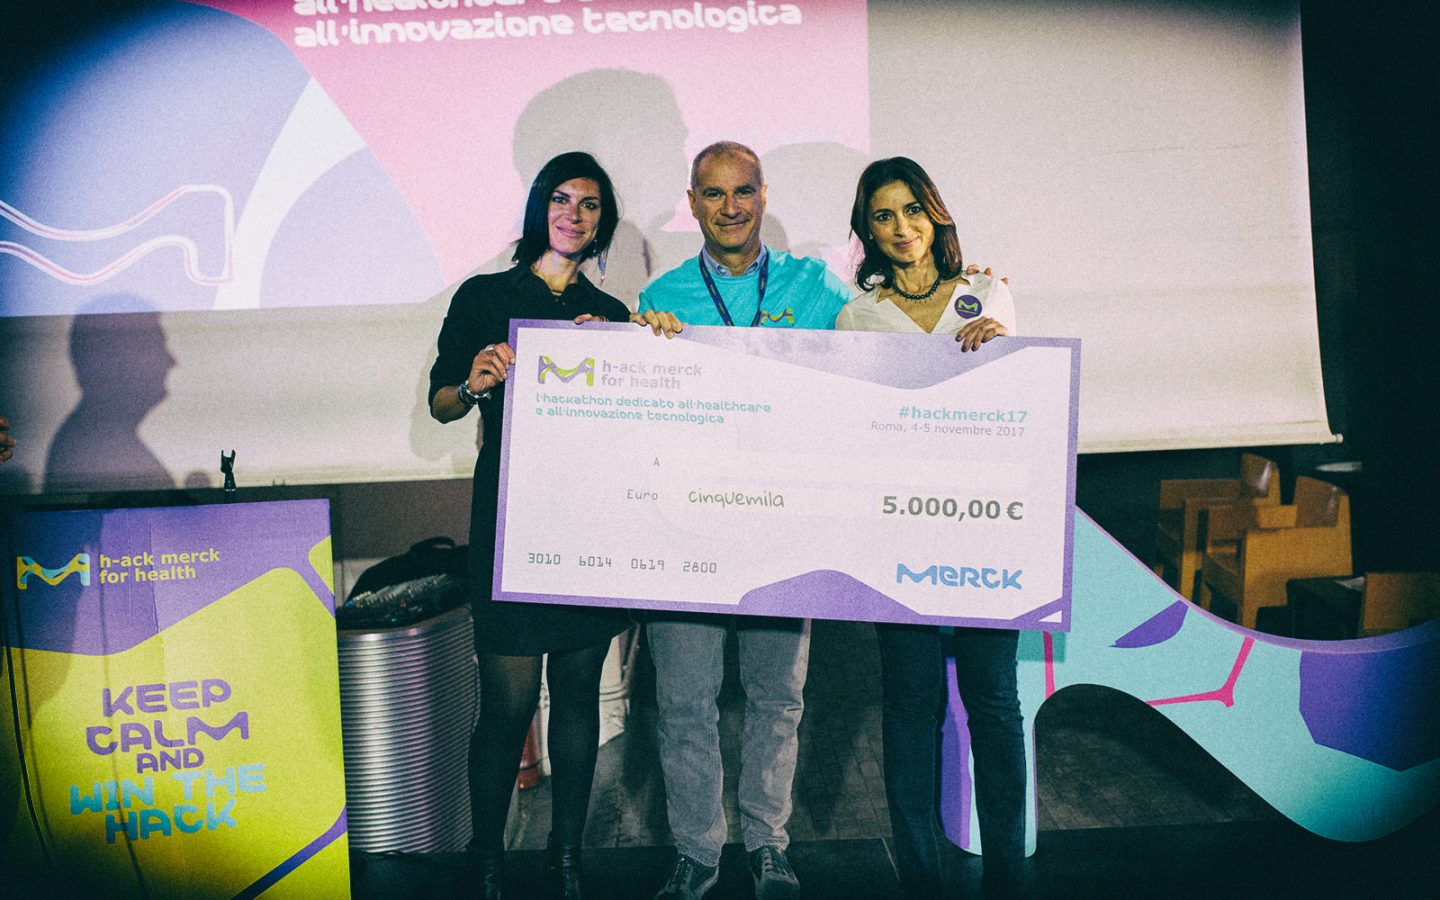 Merck for Health: annunciati i vincitori della seconda edizione dell’hackathon Merck dedicato all’healthcare e all’innovazione tecnologica